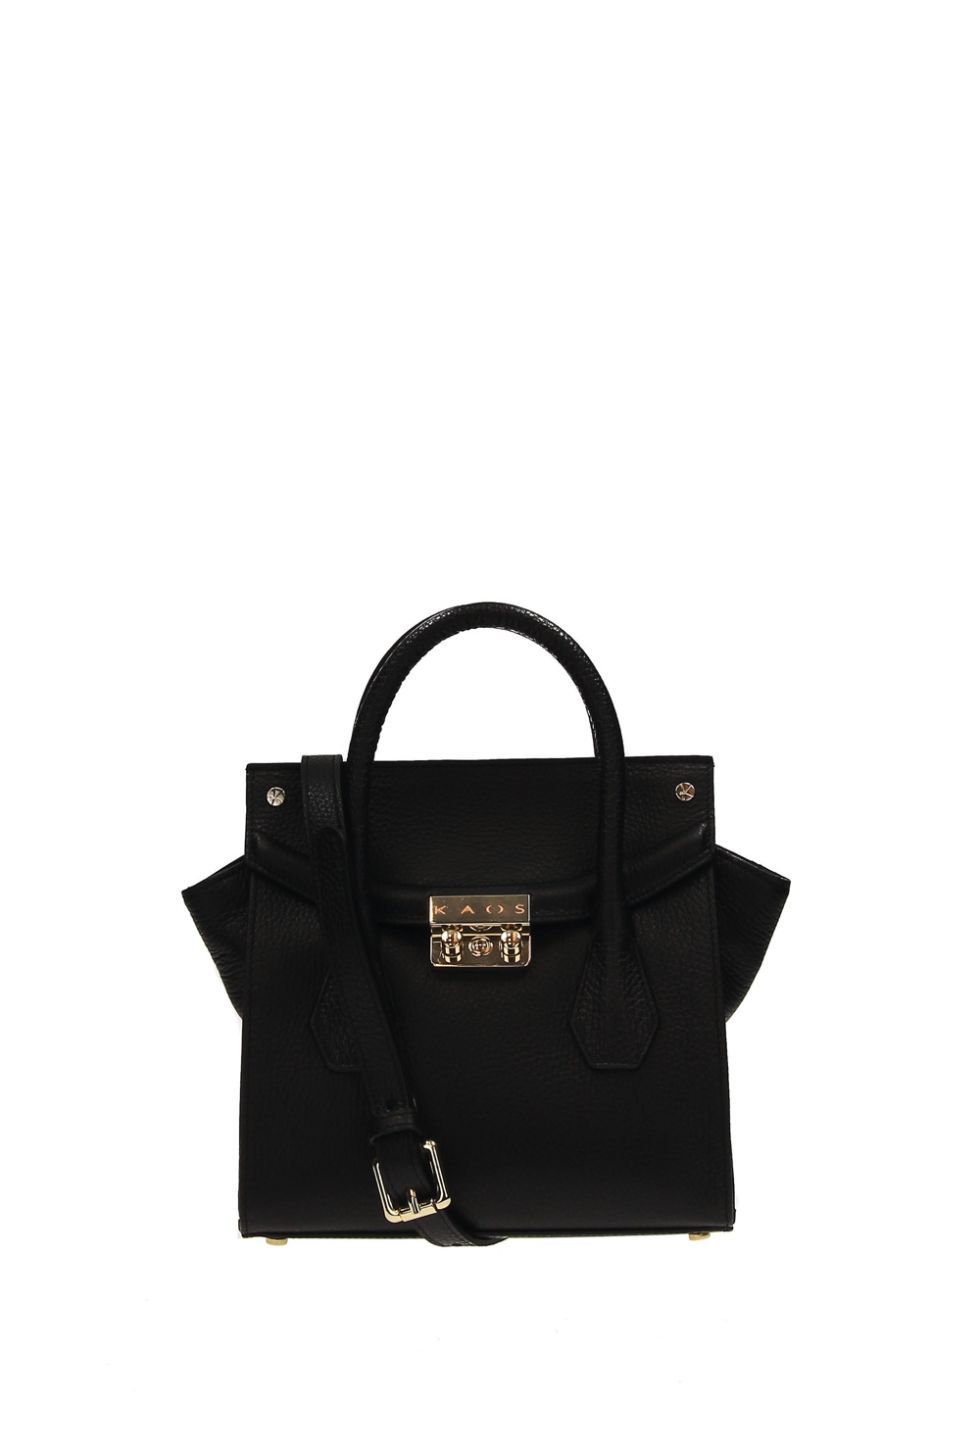 Handbag, Bag, Black, Tote bag, Fashion accessory, Shoulder bag, Leather, Material property, Birkin bag, Kelly bag, 